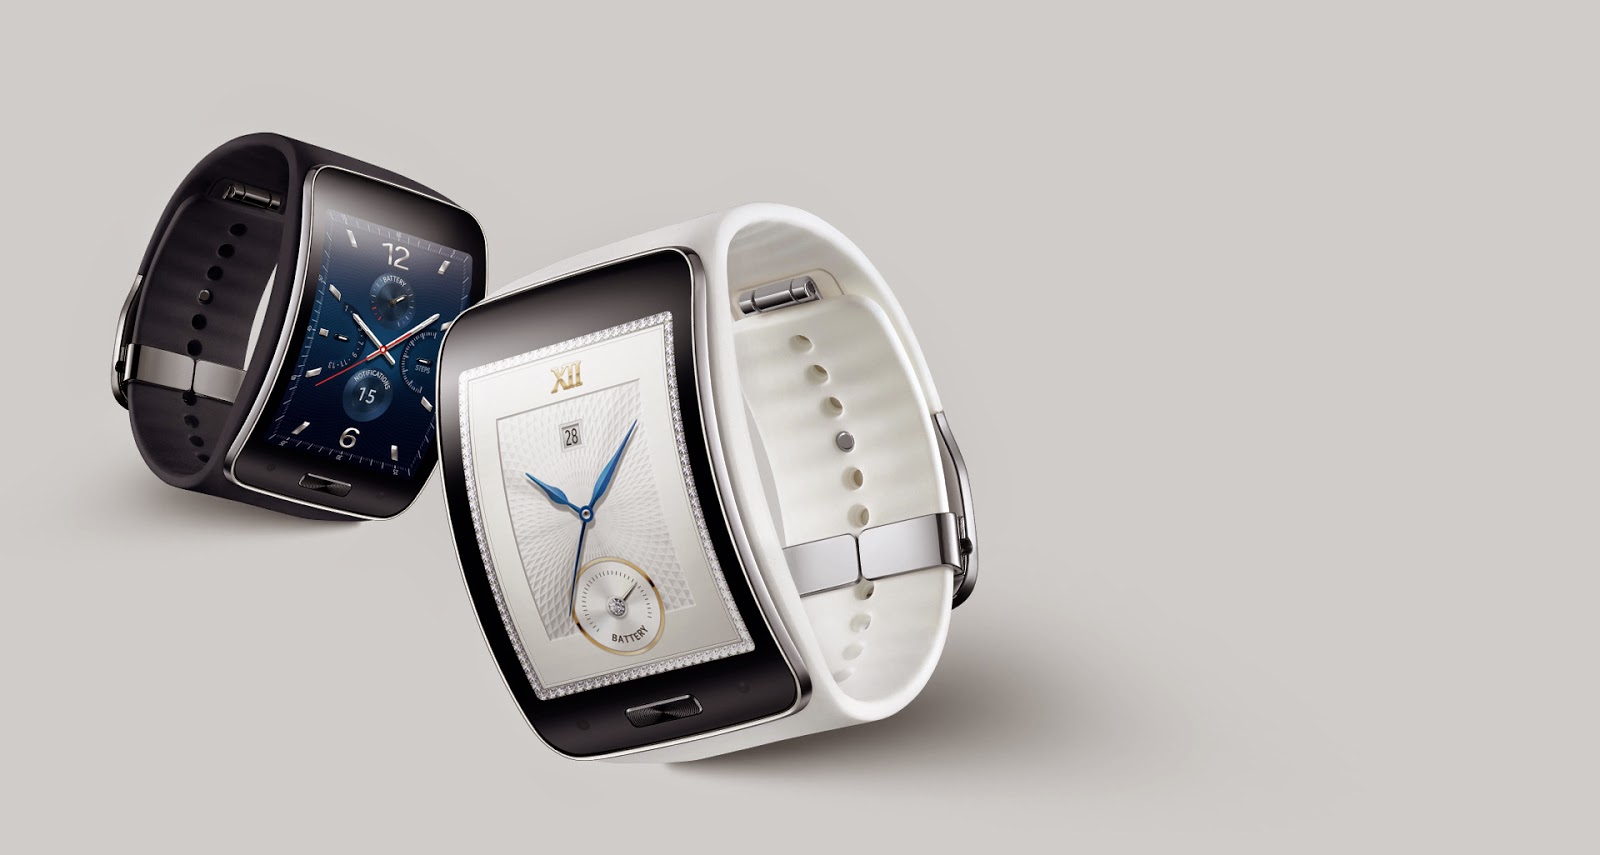 Samsung Watch Купить Авито